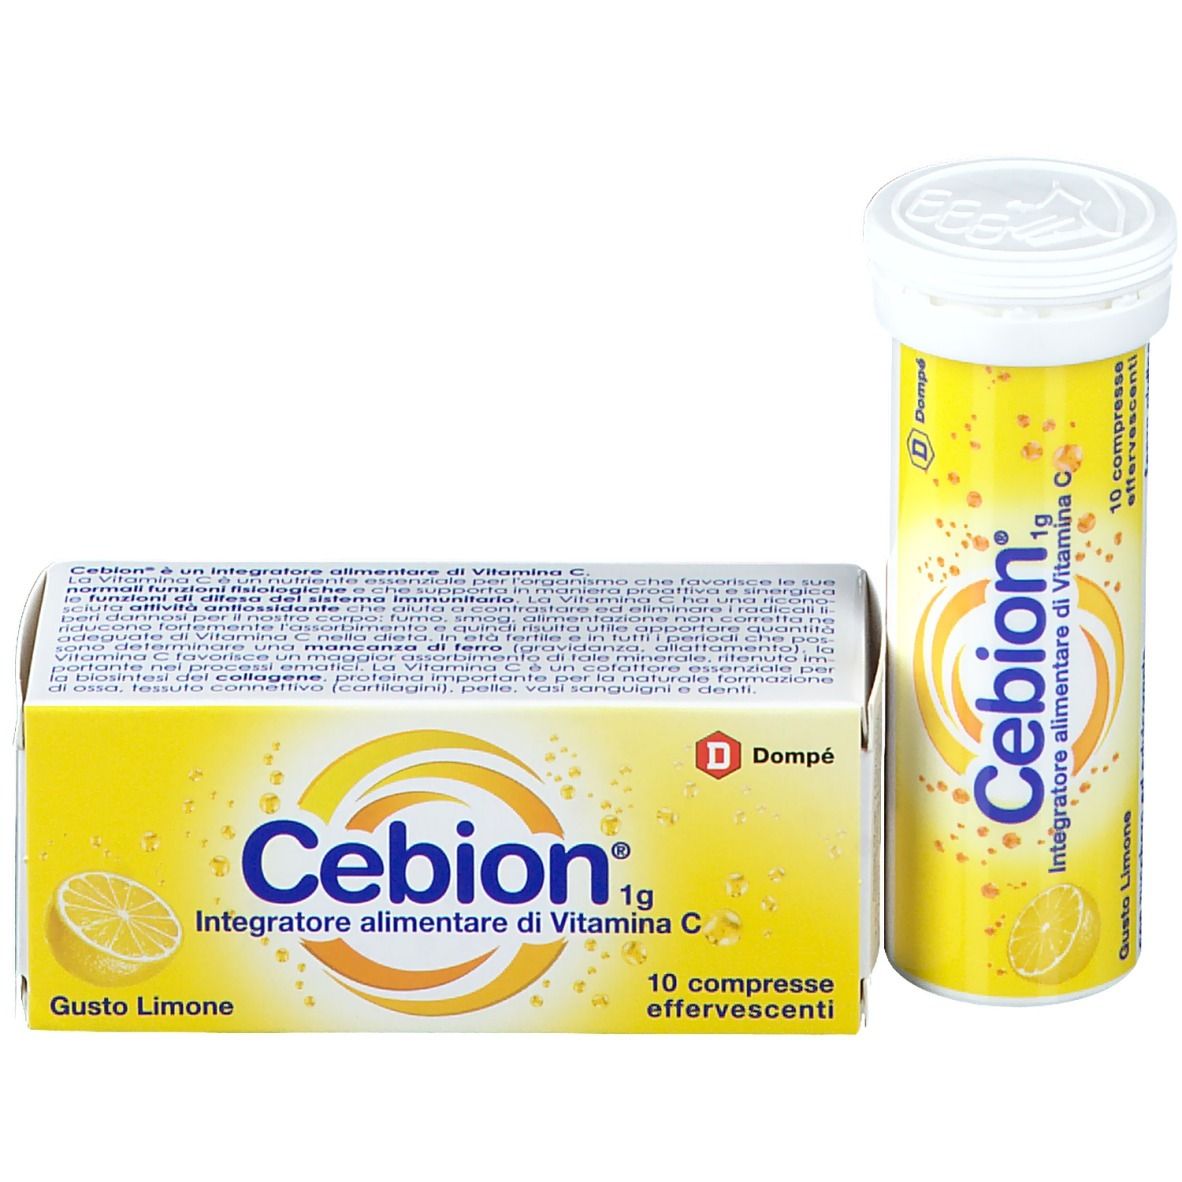 Bracco Cebion® Compresse Effervescenti Gusto Limone